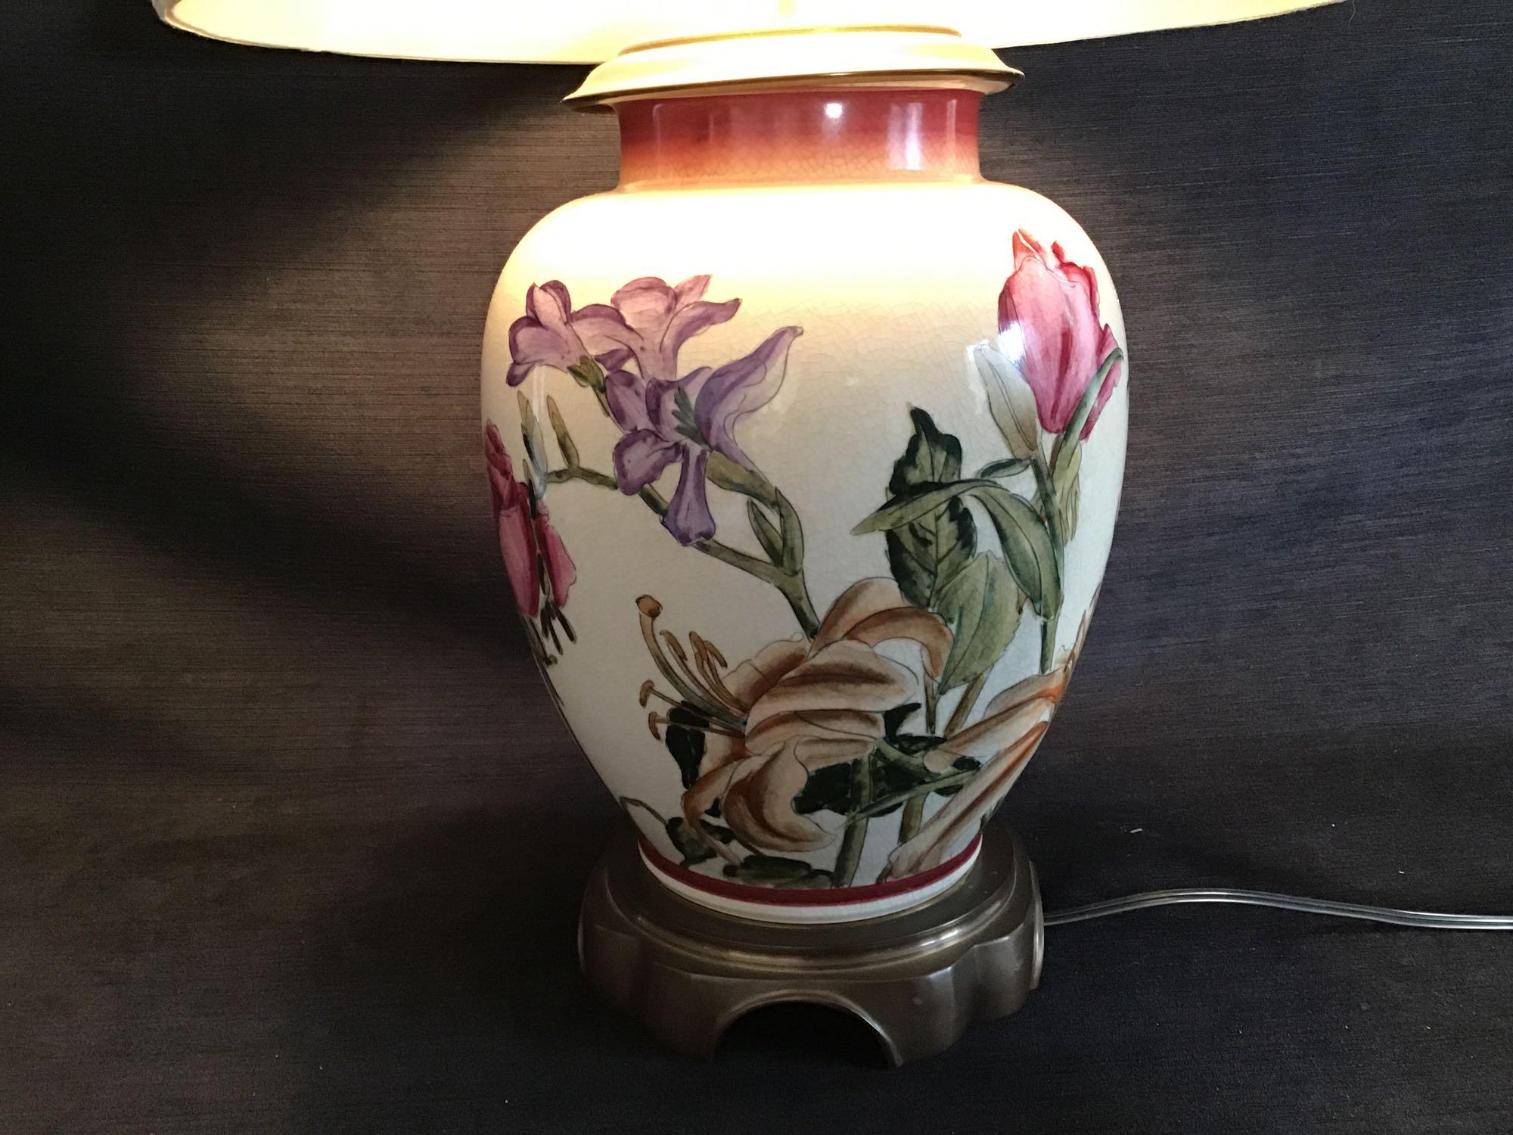 Image for Ginger Jar Lamp